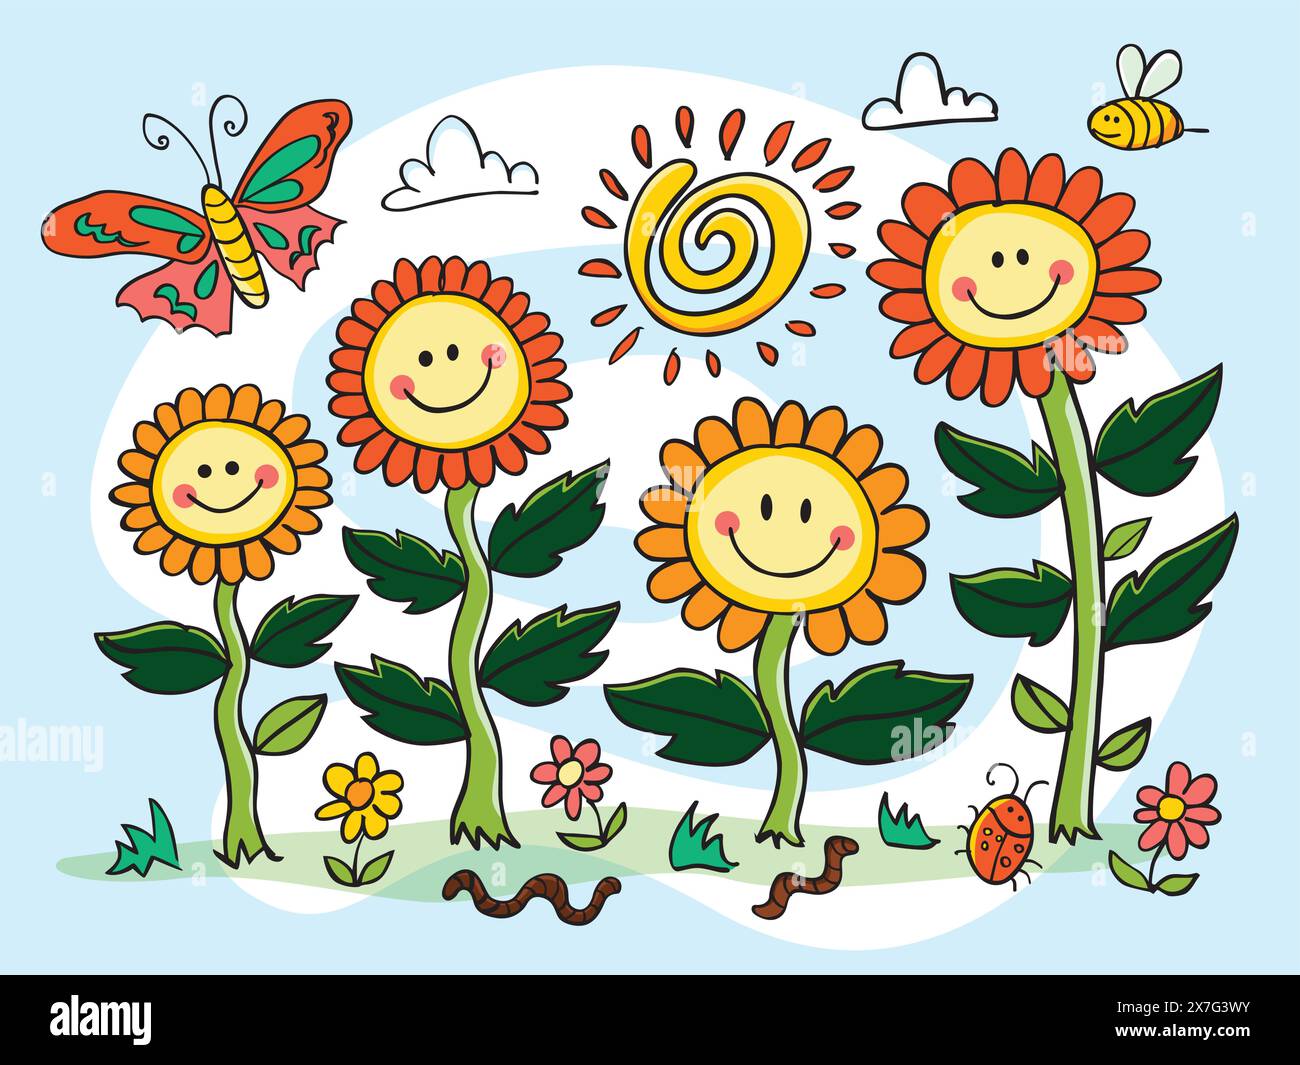 Vektor Bunte Hand gezeichnete Smiley Gesicht Blume Illustration mit Sonnenwirbel und Motte. Geeignet für Grußkarten und Wandbilder. Stock Vektor